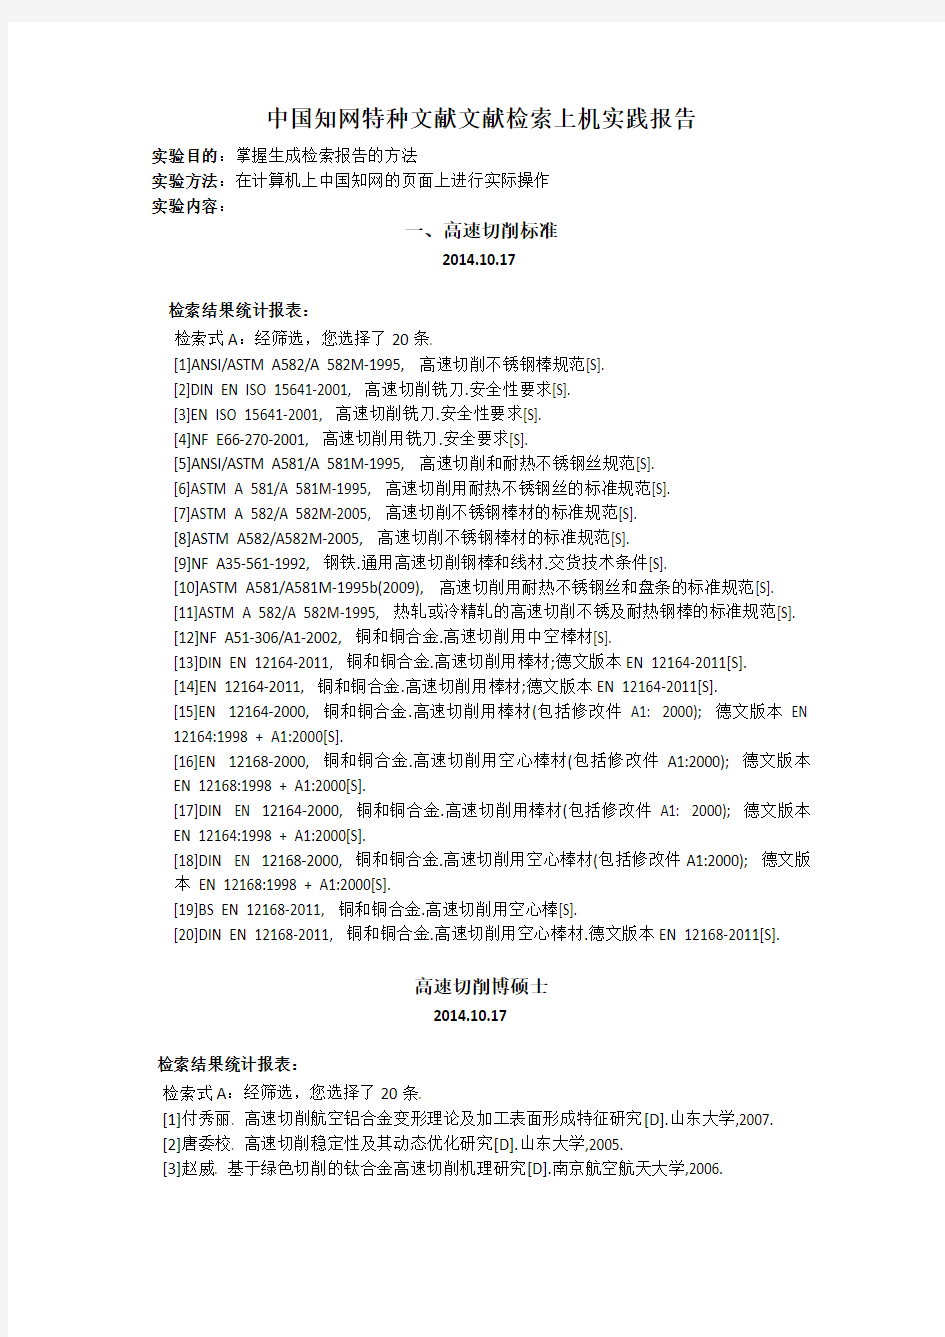 中国知网特种文献文献检索上机实践报告